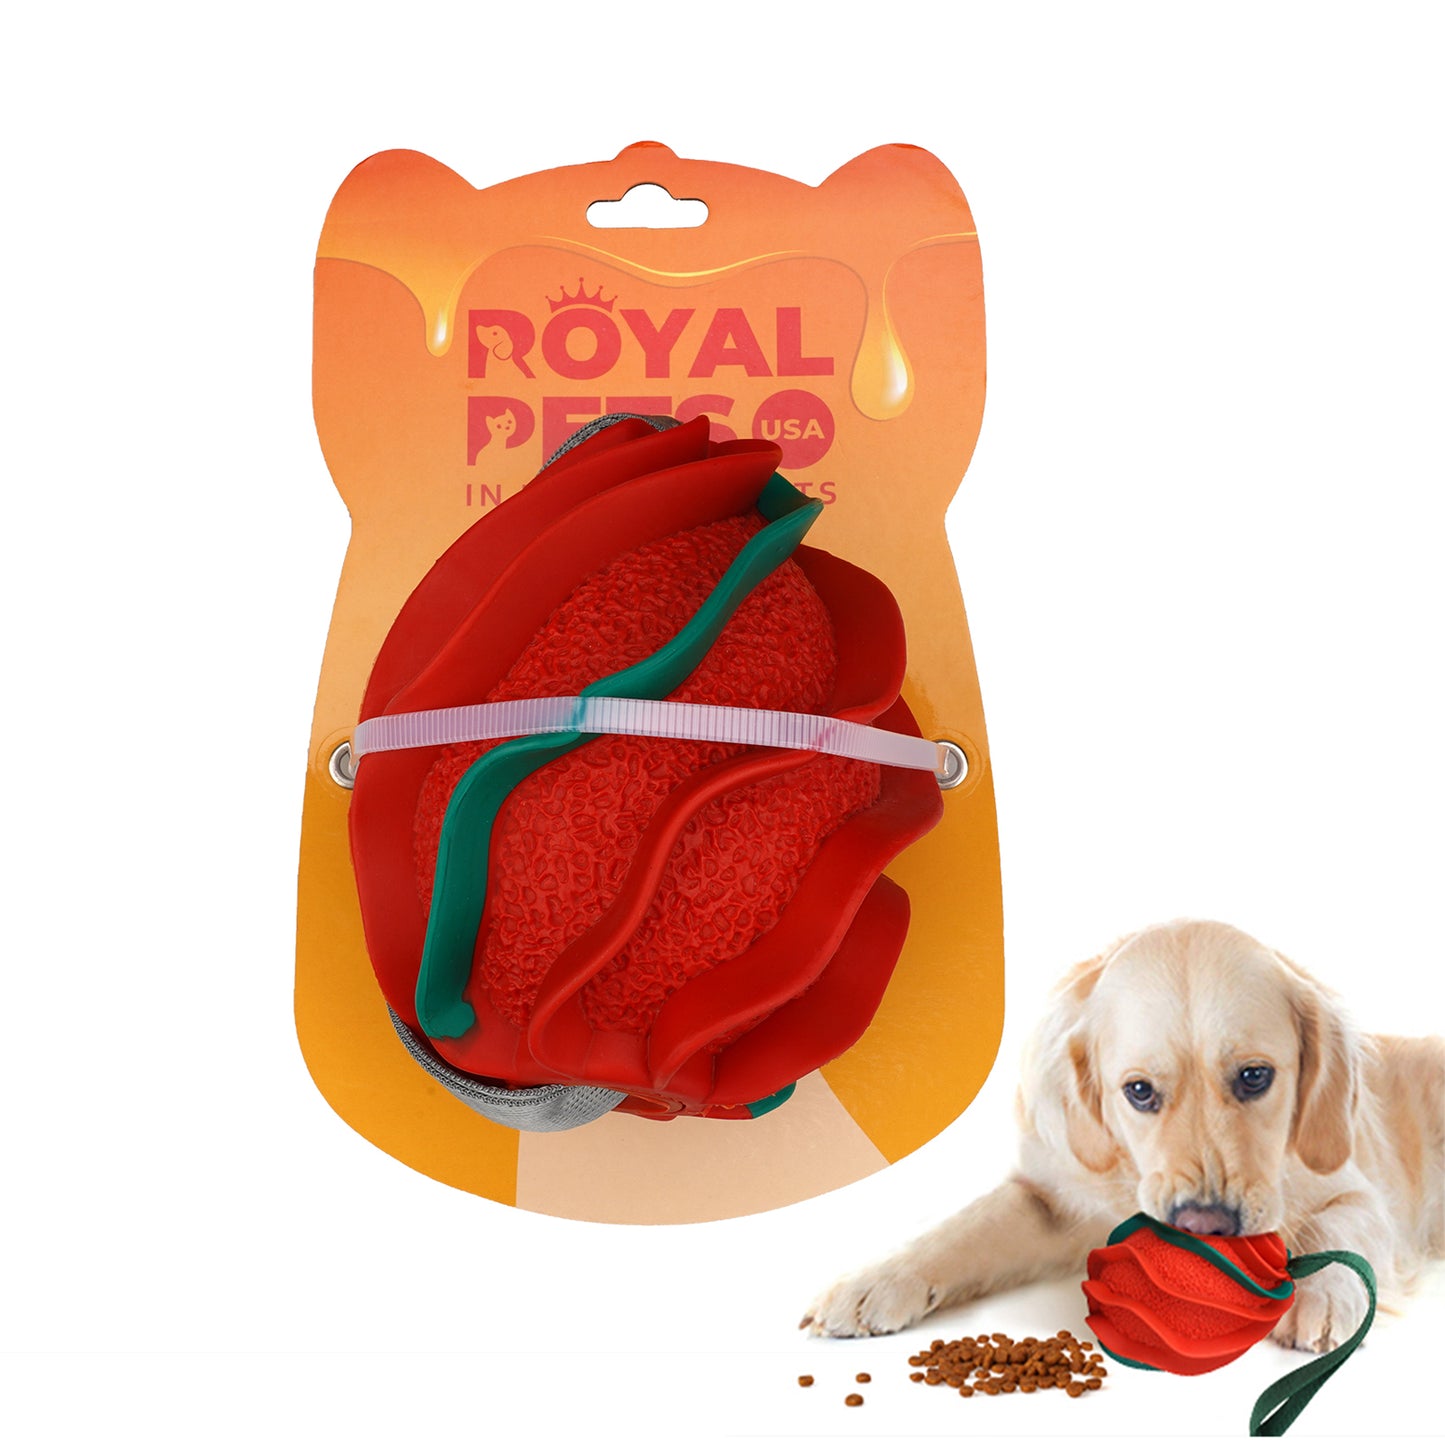 Royal Pets 高品質で壊れにくい犬用おもちゃ